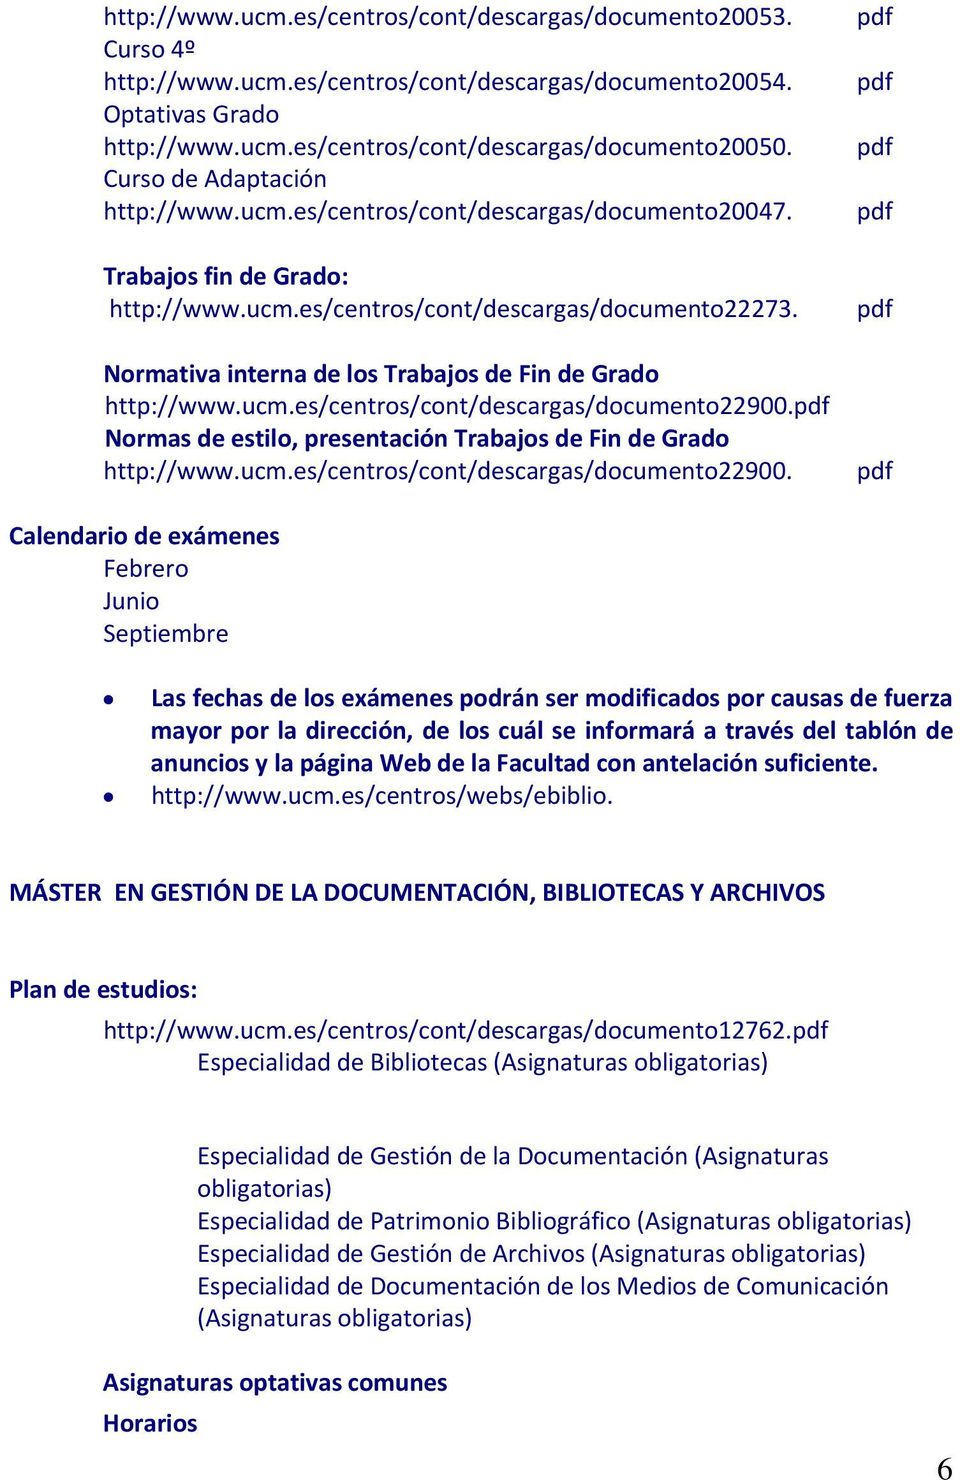 Normativa interna de los Trabajos de Fin de Grado http://www.ucm.es/centros/cont/descargas/documento22900.